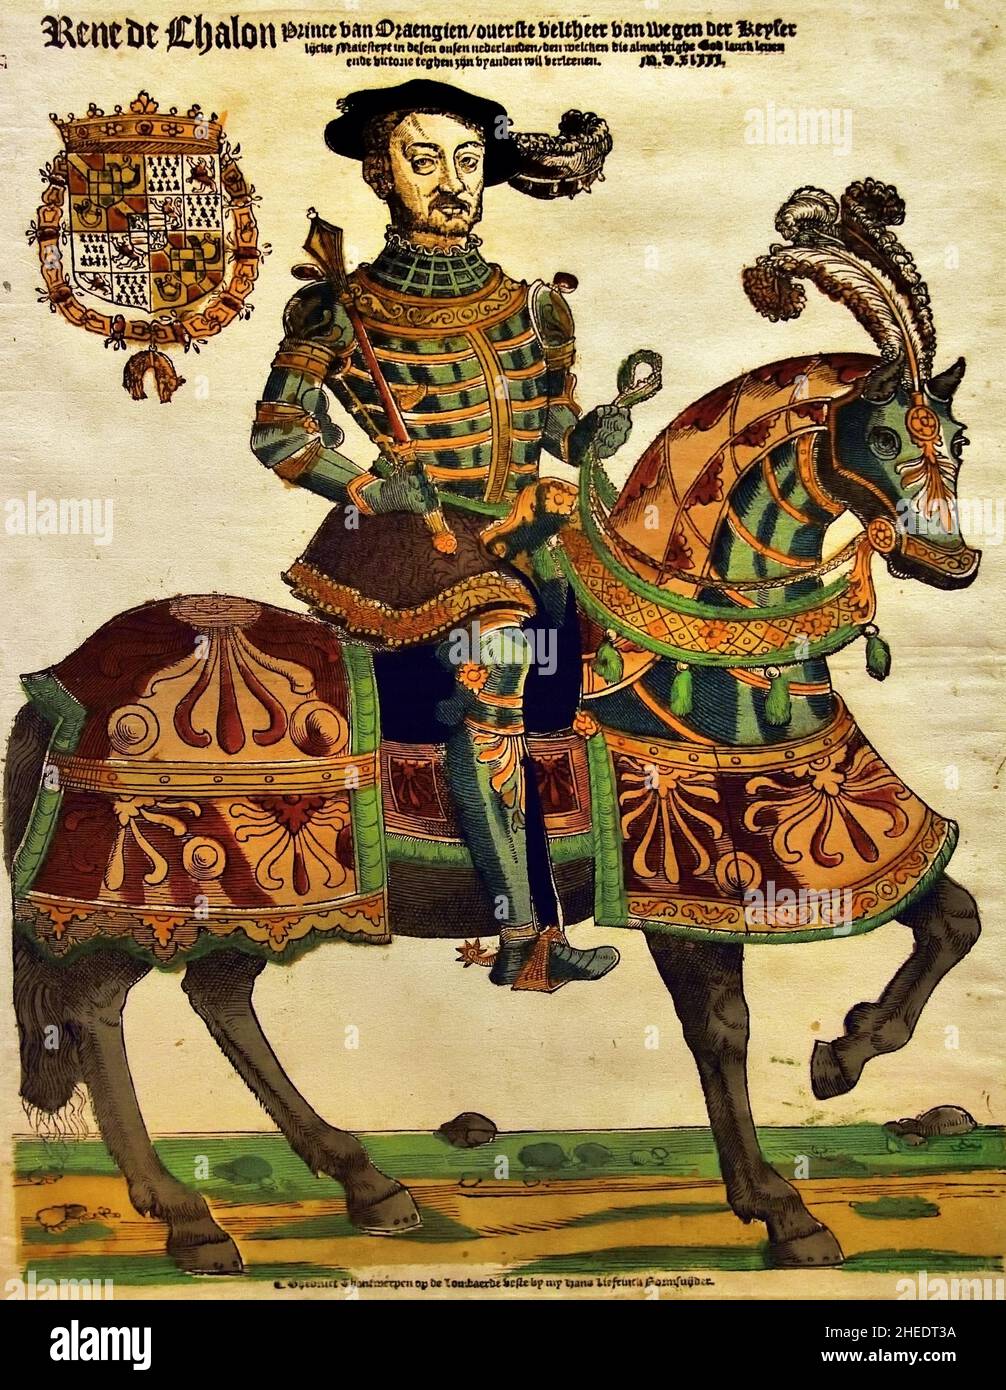 René de Chalon (1519-1544), Principe d'Orange, in armatura a cavallo, personale in mano. 1543 ,produttore di stampe in legno/a mano, Cornelis Anthonisz. Editore Hans Liefrinck, Anversa, Belgio, Fiammingo, I Paesi Bassi, ( René de Chalon , vestito di armatura in teal con strisce arancioni e camice viola. Il suo cavallo ha una copertura in due tonalità di rosso con frangia verde. In alto a sinistra il suo stemma con l'ordine del vello d'oro. René de Chalon divenne stadtholder di Olanda, Zeeland e Frisia nel 1540. ) Foto Stock